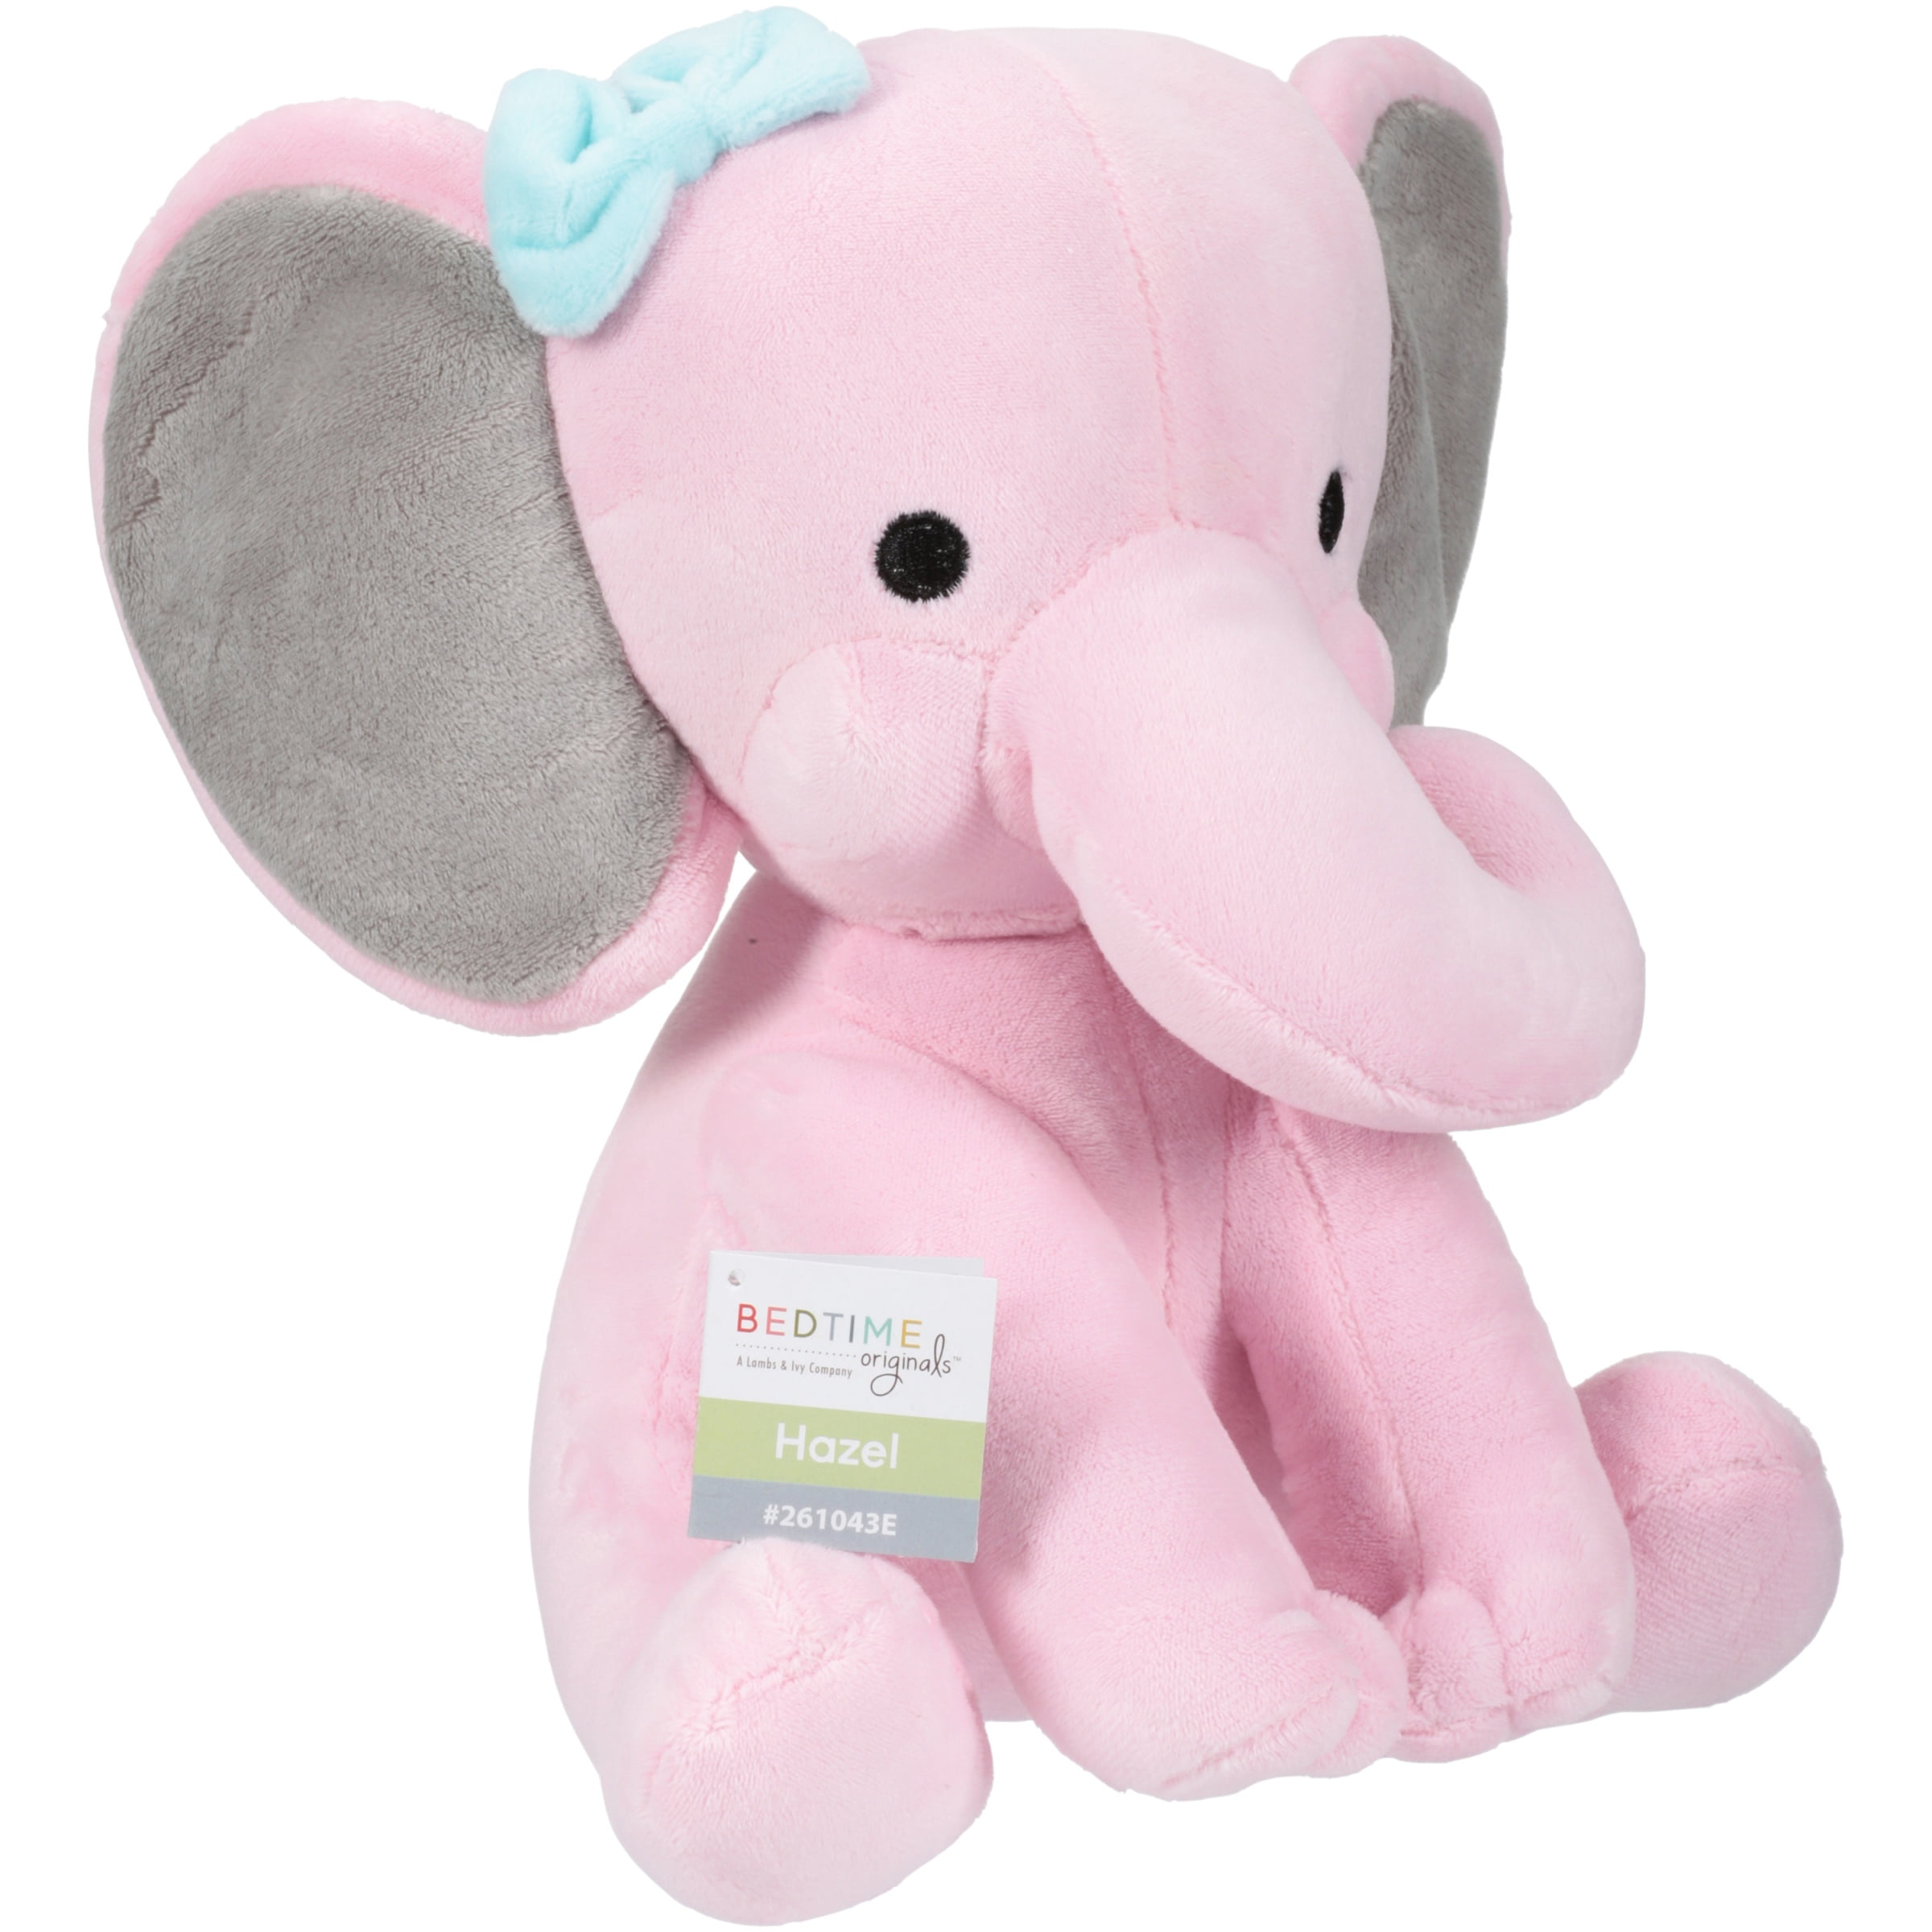 pink plush elephant